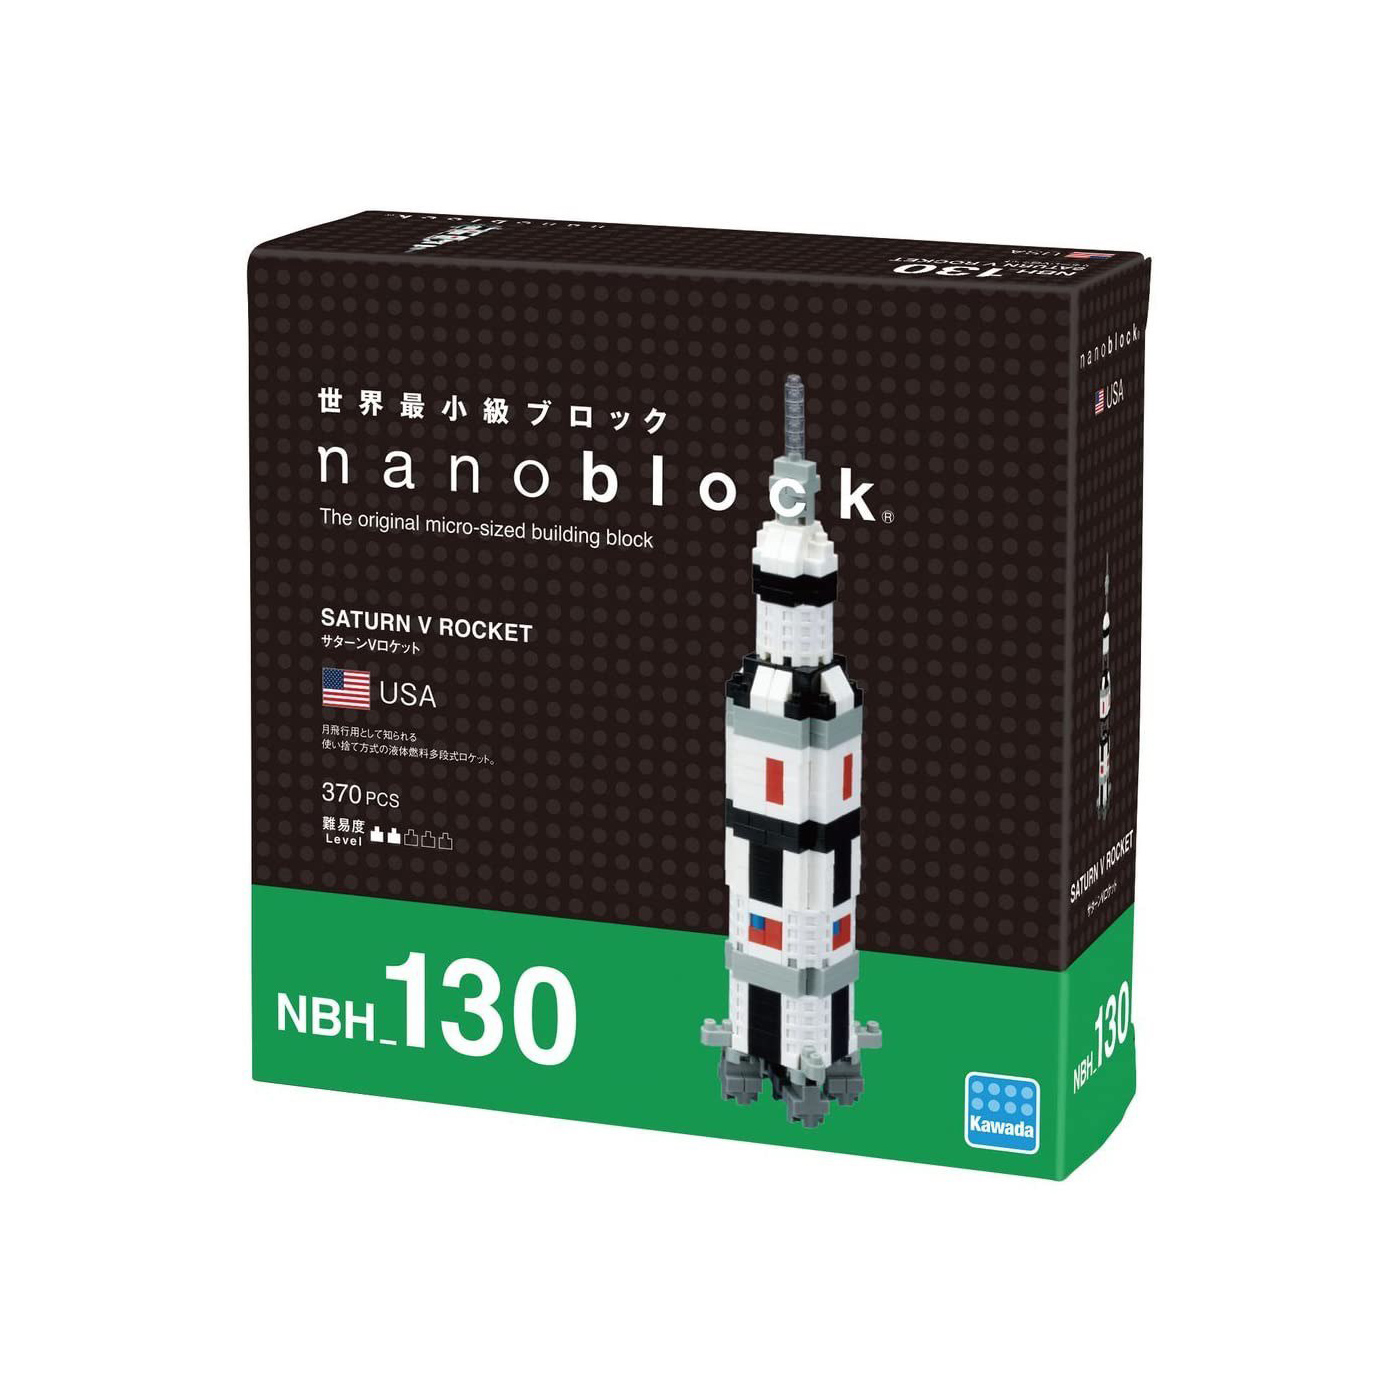 Saturn V Rocket - Nanoblock 